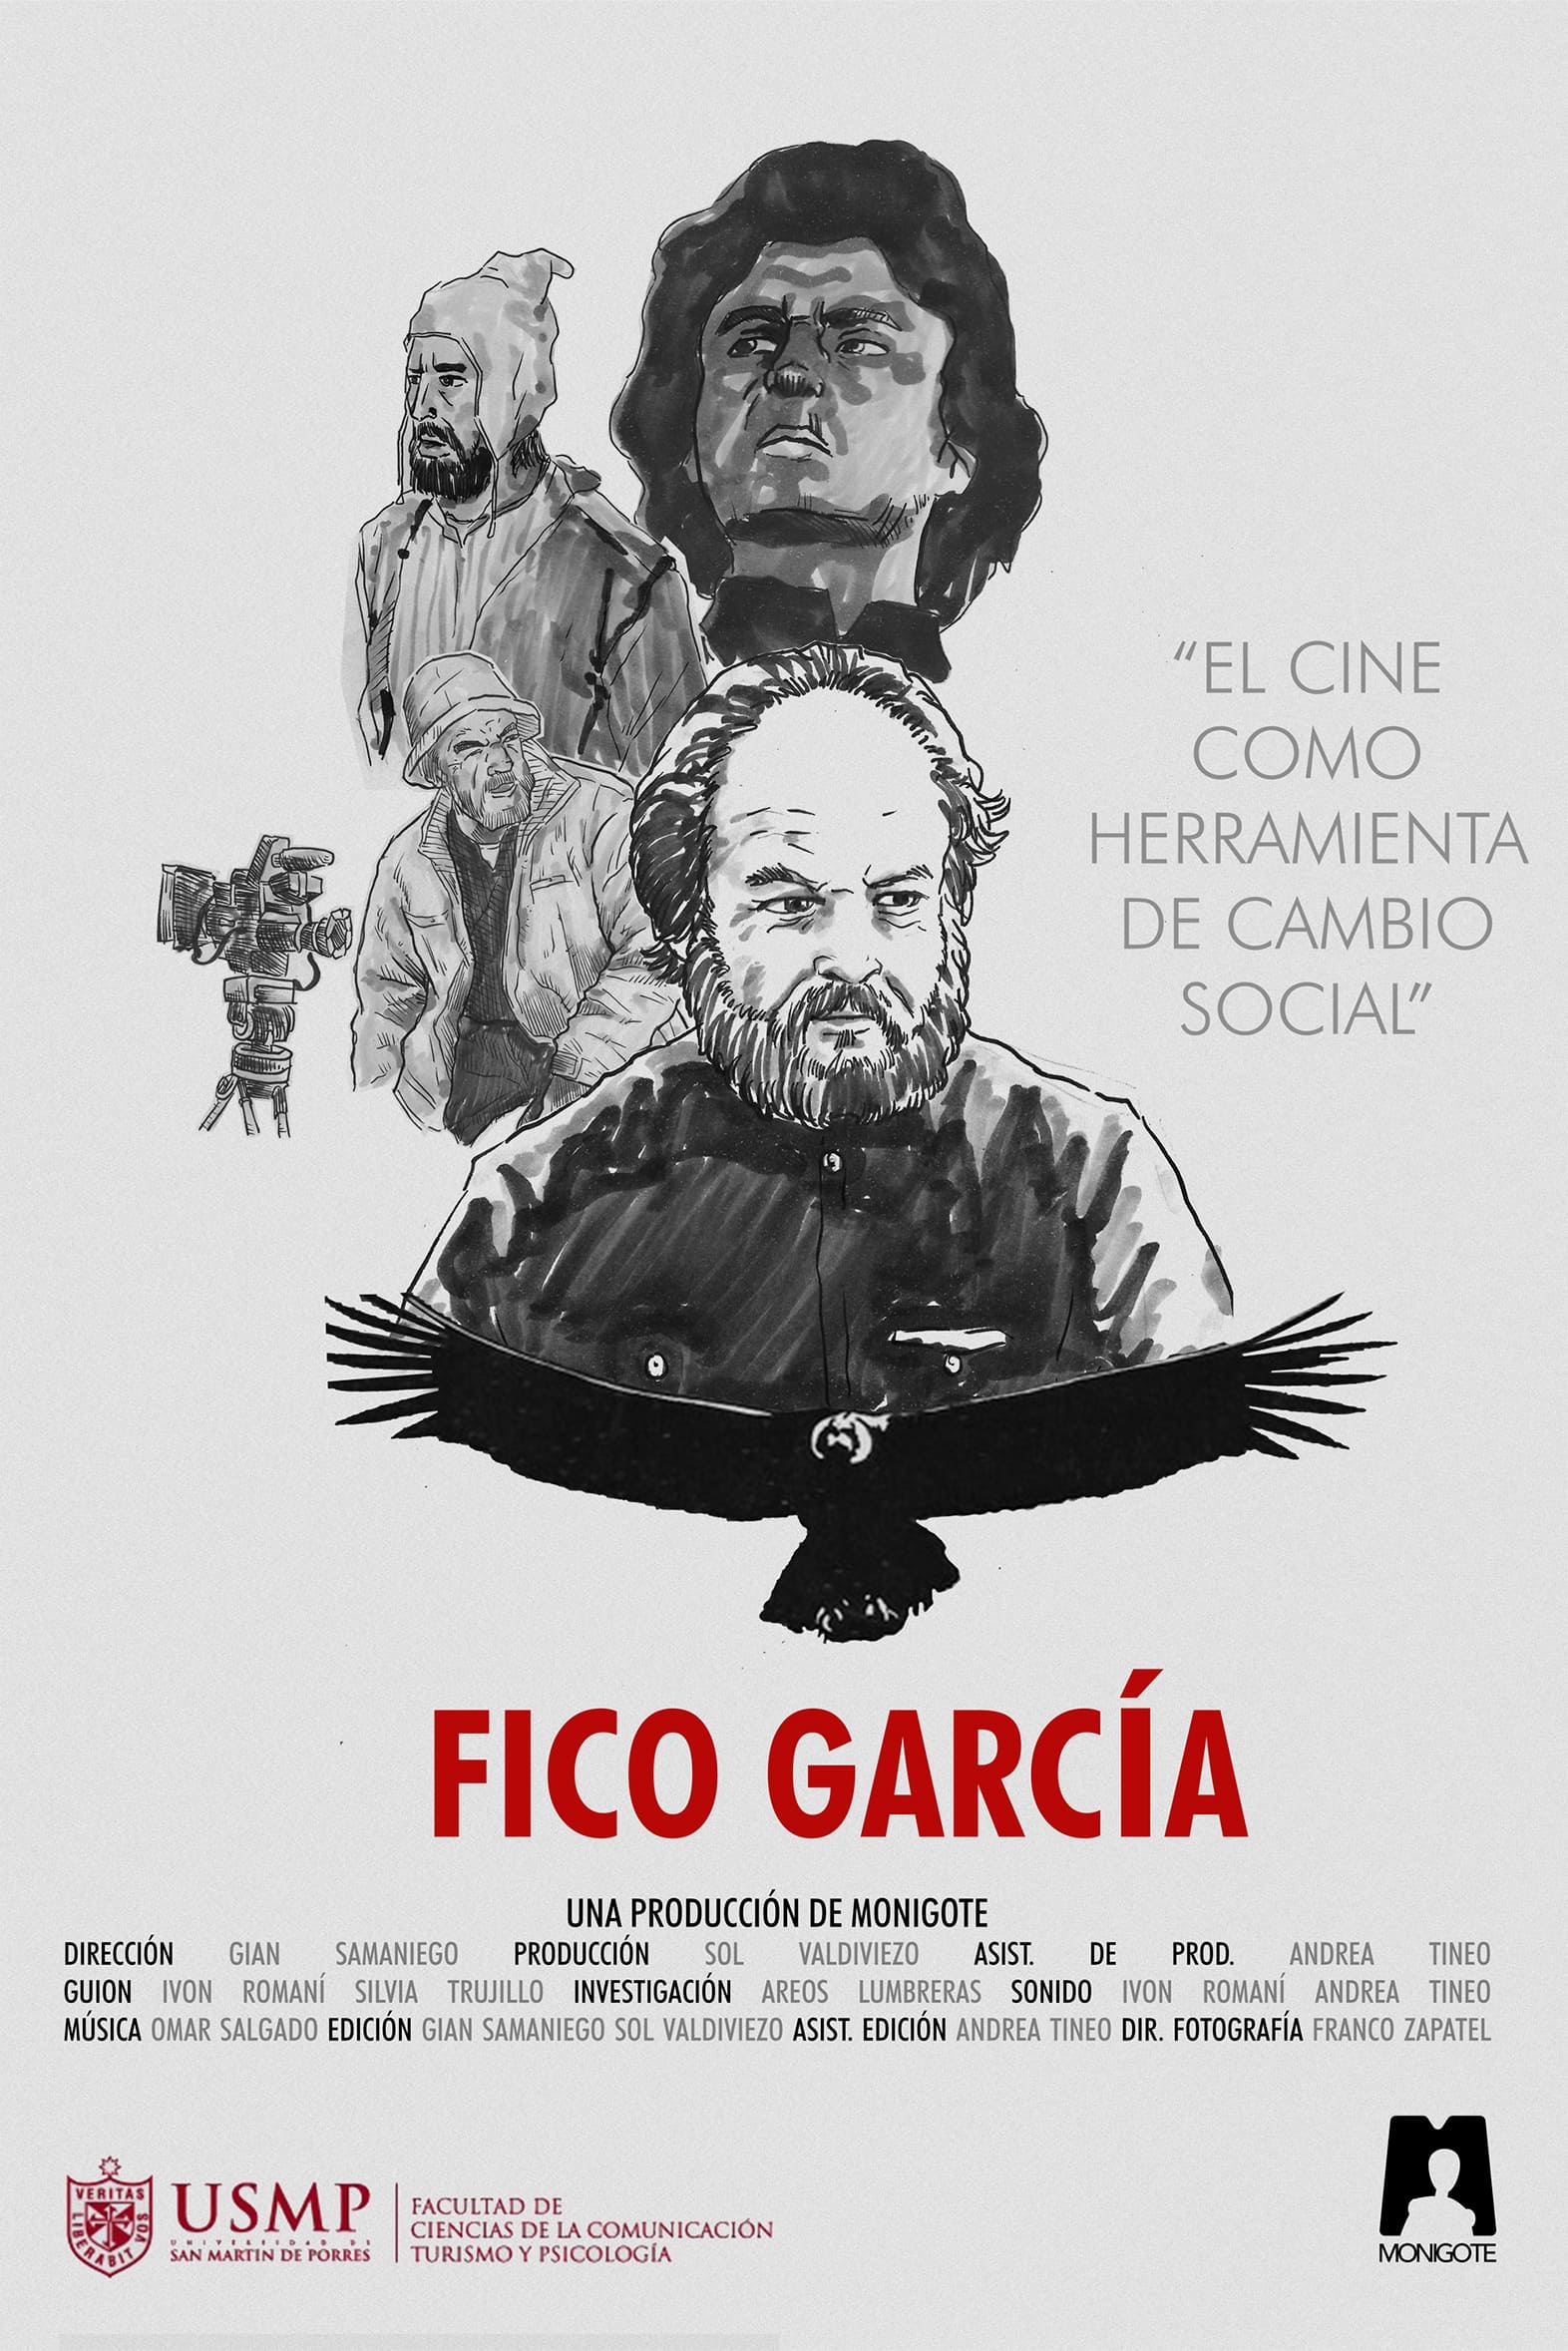 Fico García